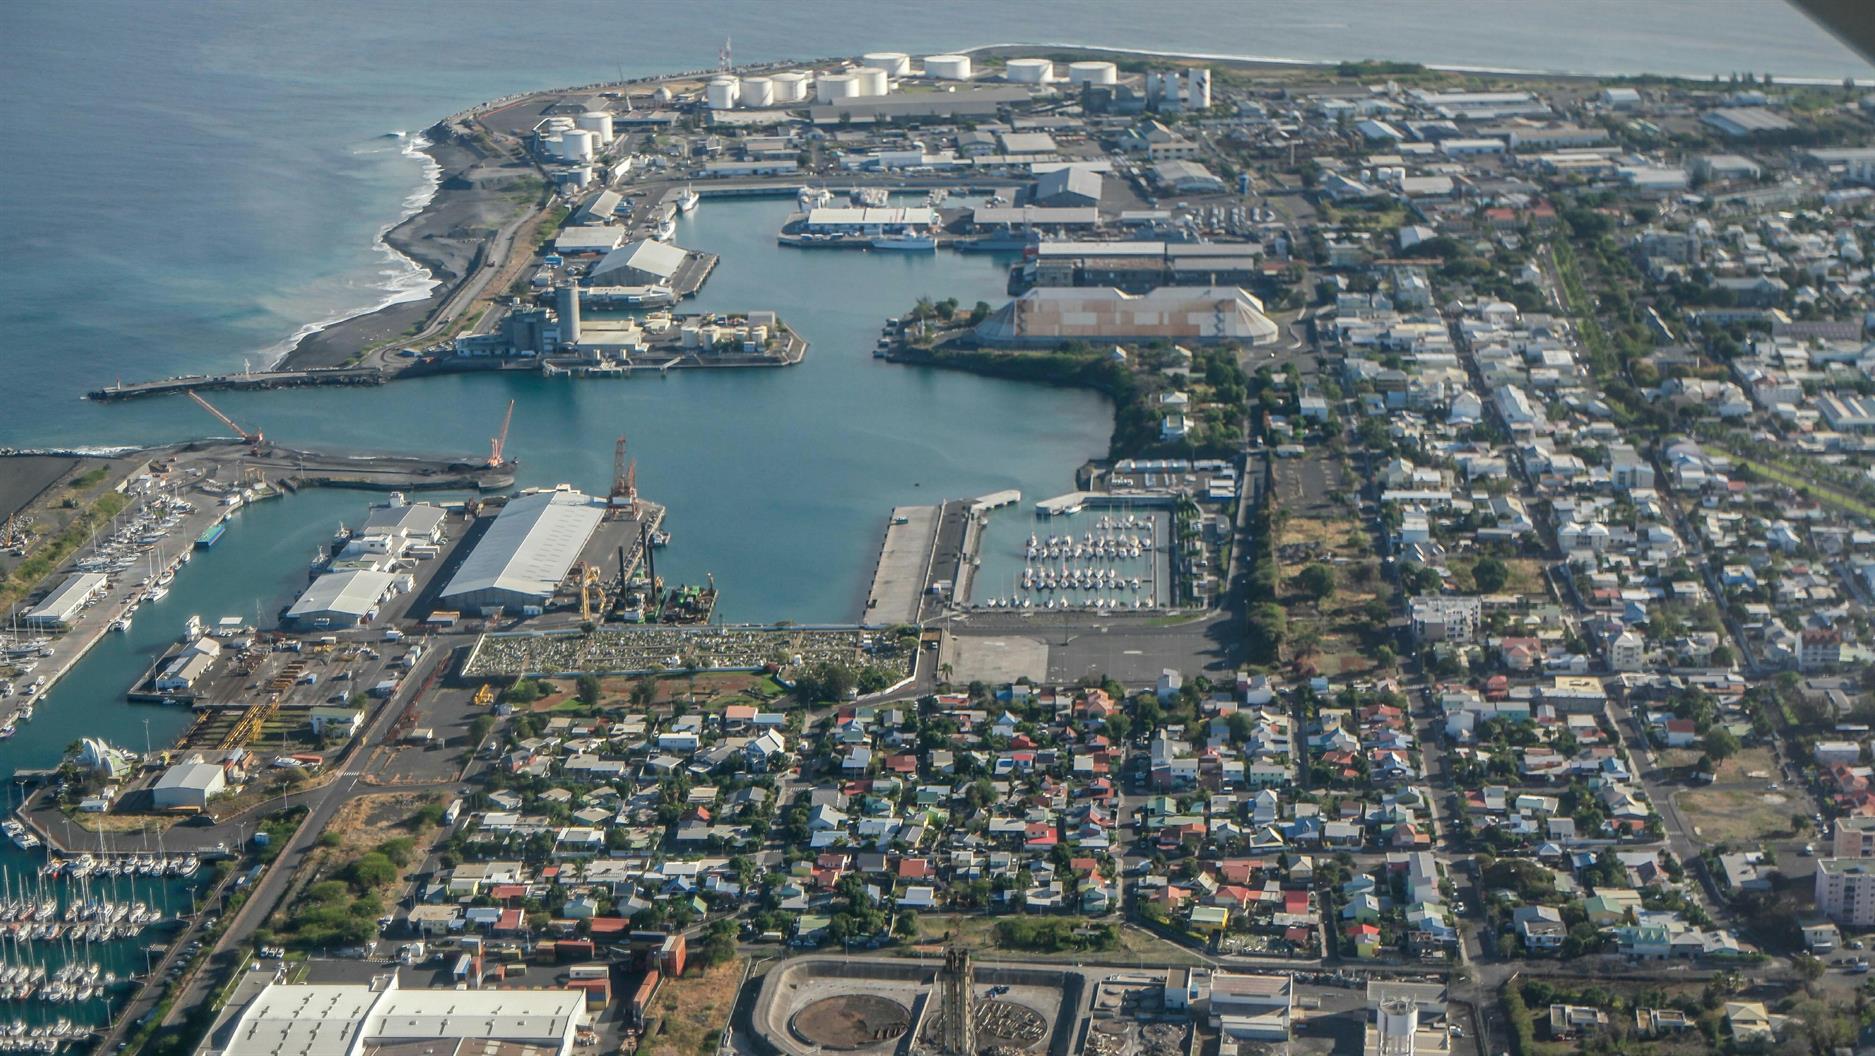 Die Stadt Le Port ist das Ziel für Segelboote, da hier die Einklarierung stattfindet. Unsere Anlaufstelle ist die Marina "Plaisance des Galets", die sich in der Mitte des Bildes befindet.
